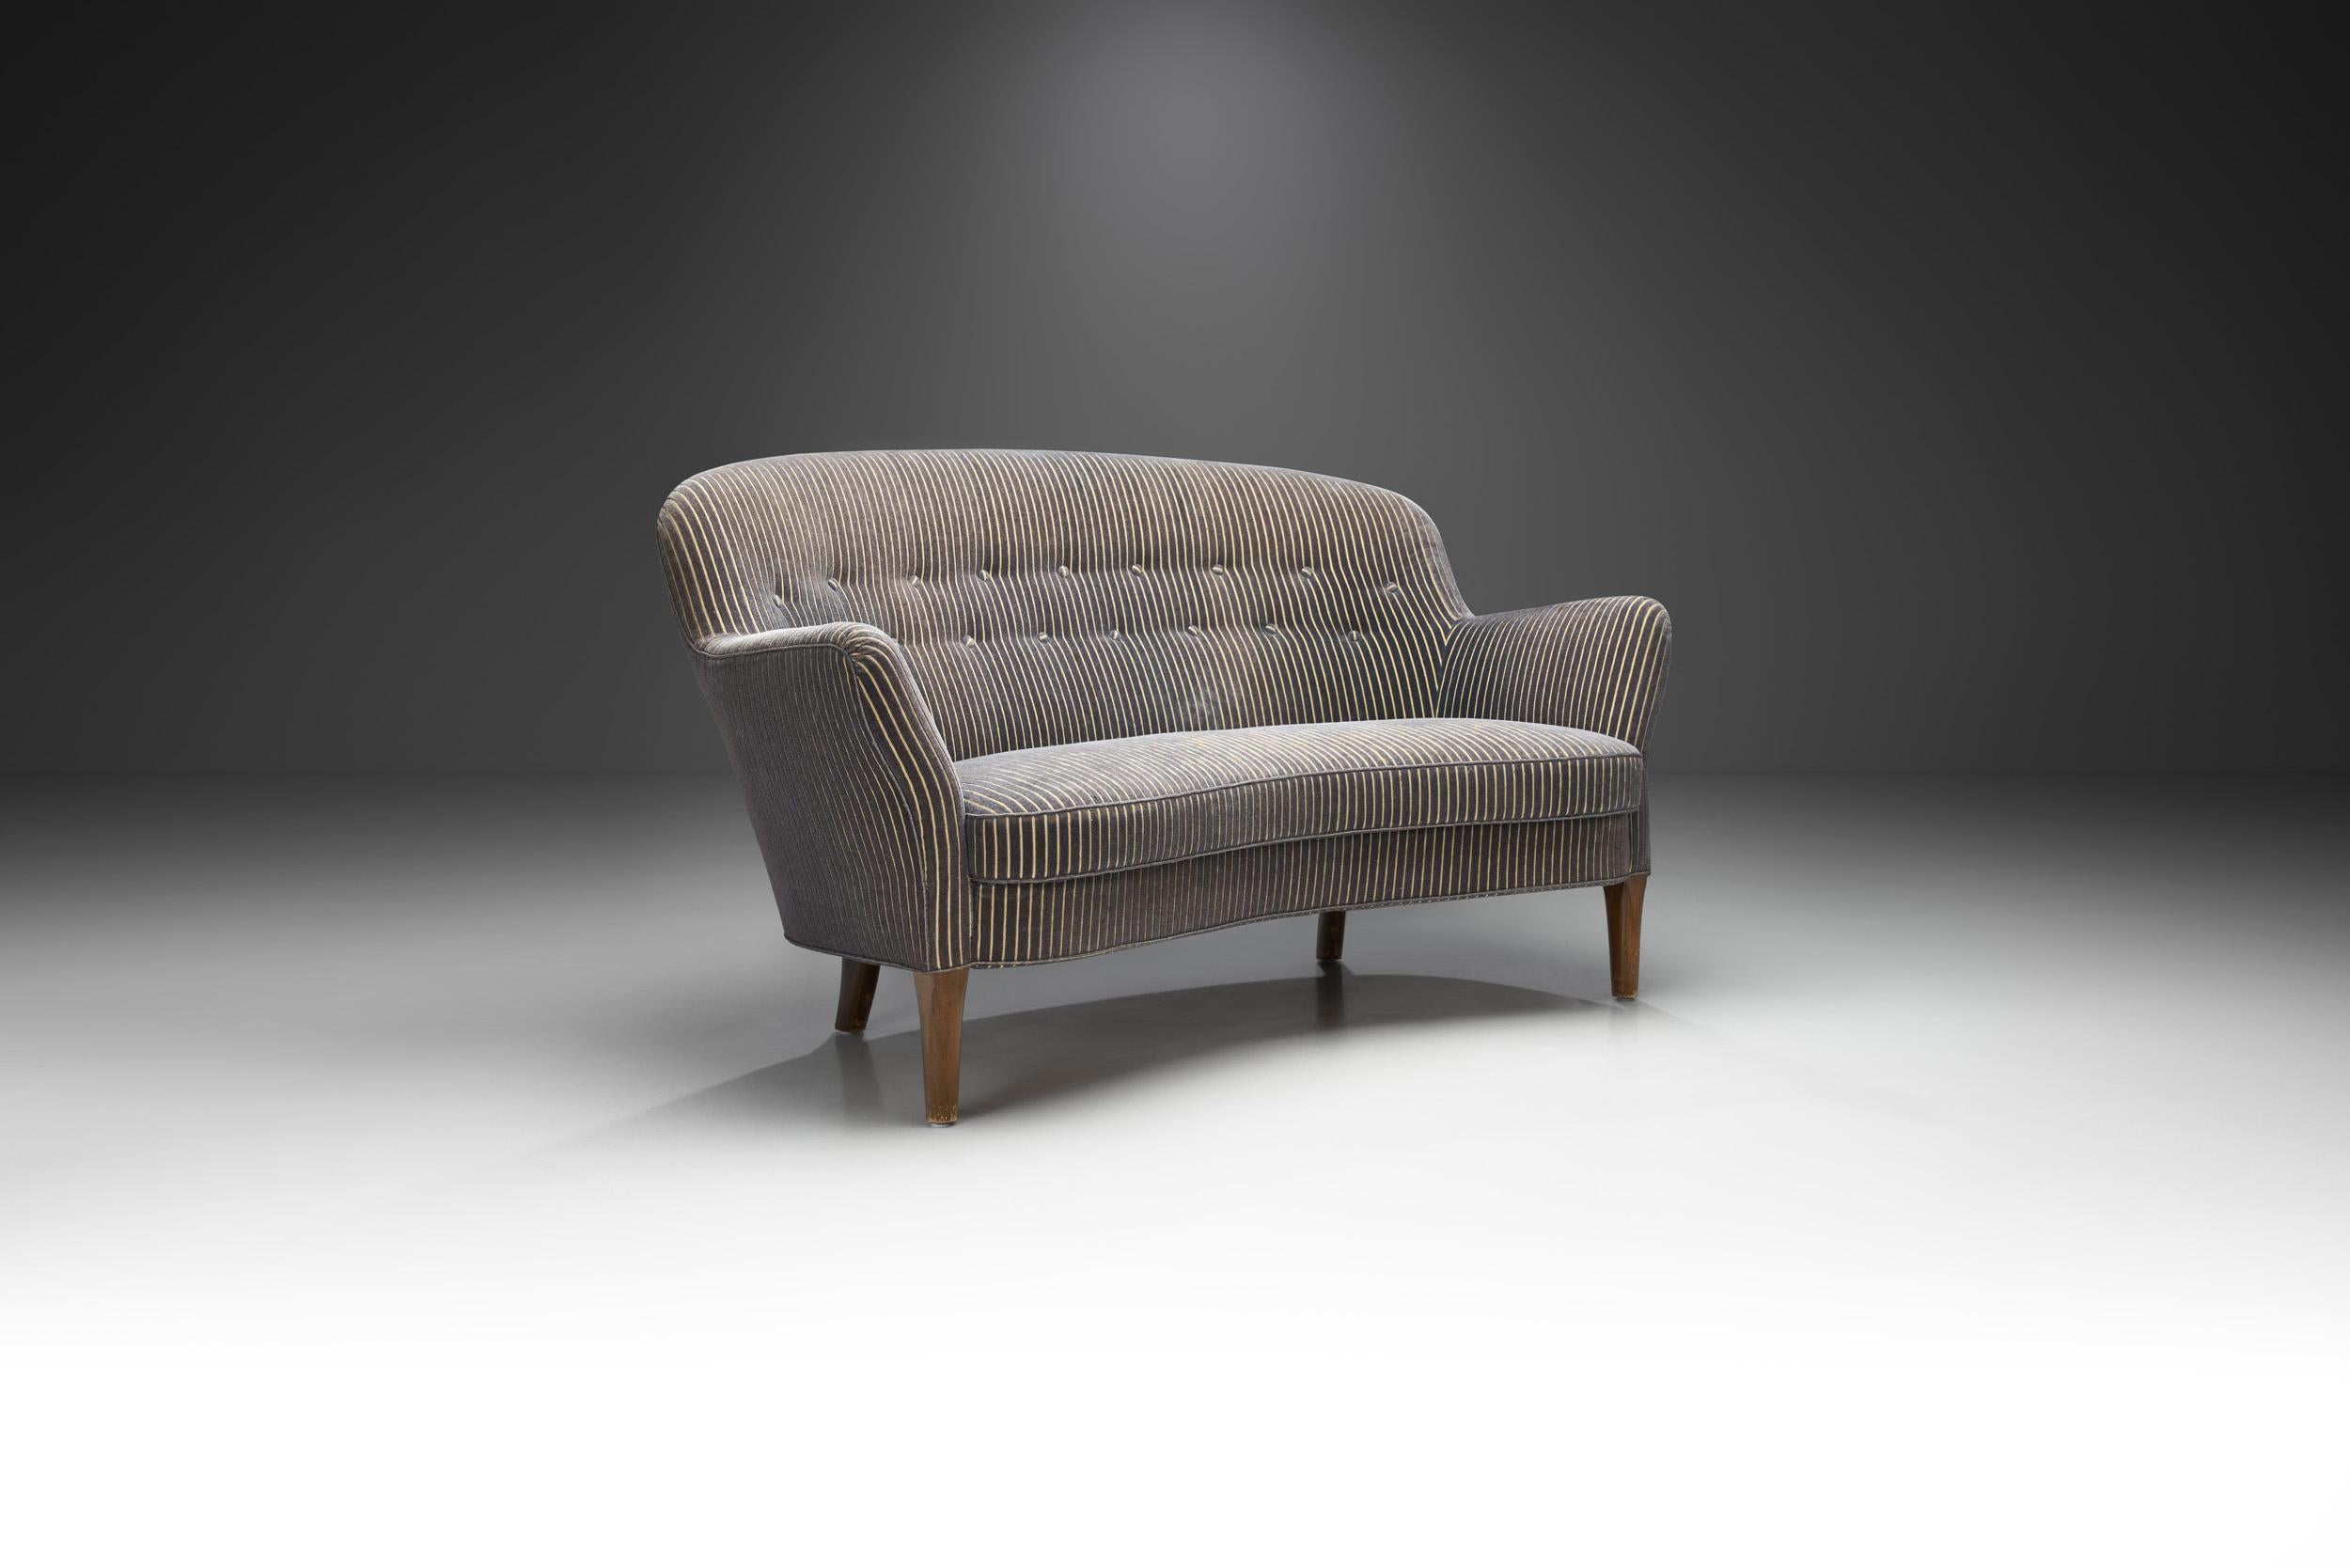 Dieses schöne dänische Zweisitzer-Sofa ist ein frühes Beispiel für das, was als dänisches Mid-Century Modern Design bekannt wurde. Mit seinem klassischen Mid-Century-Look ist dieses Modell das perfekte Stück, um den begehrten Stil in jedes Interieur